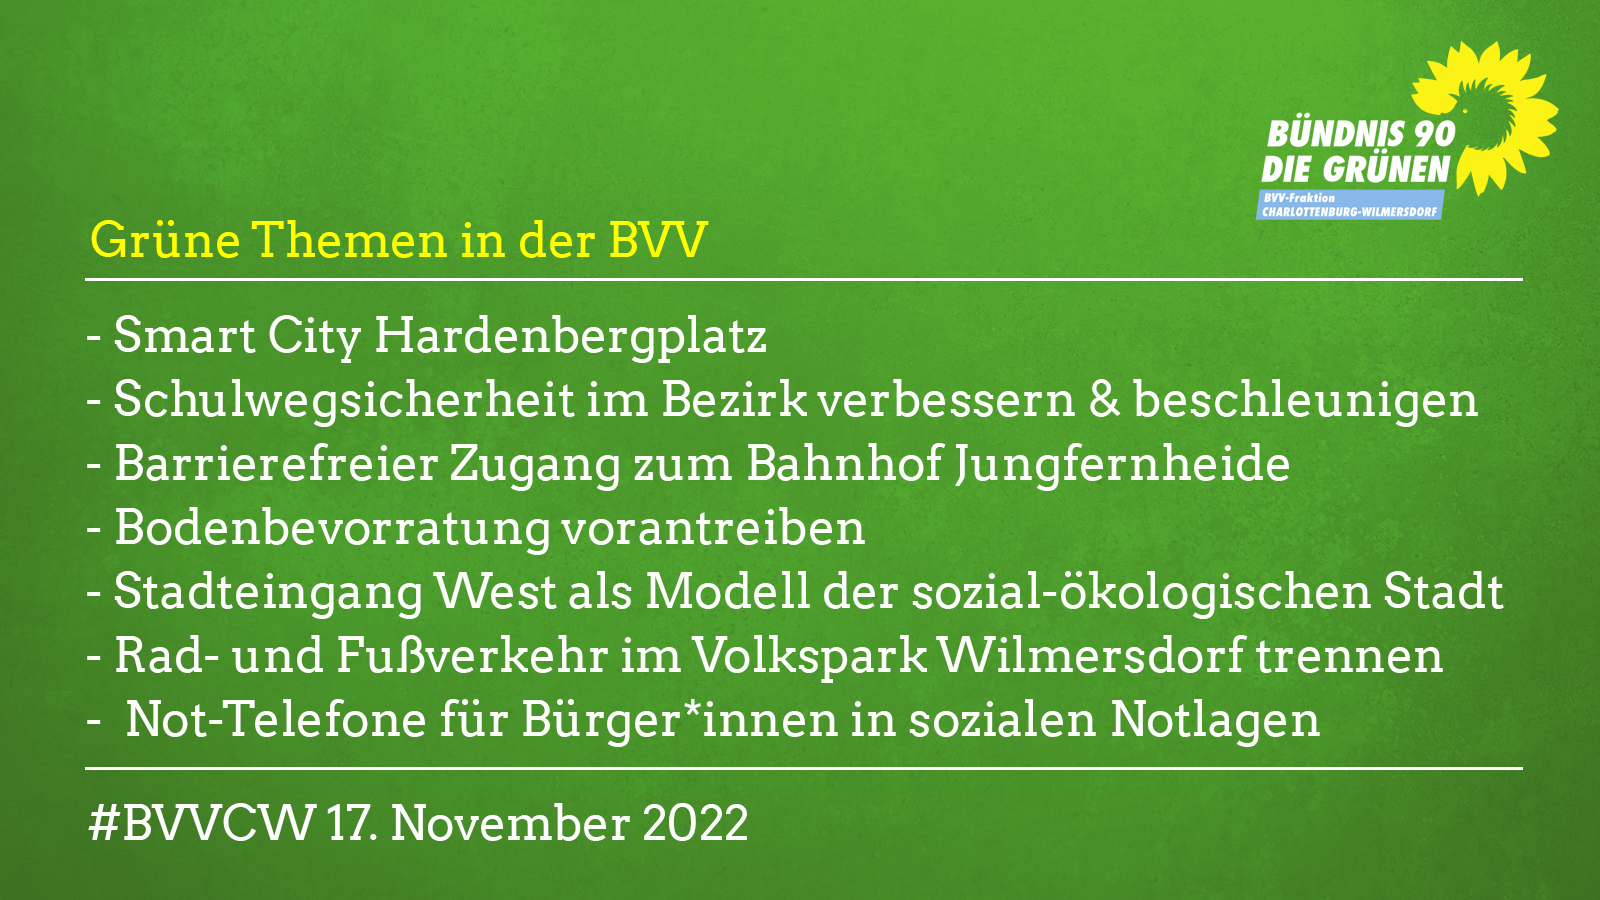 Grüne Themen in der BVV am 17.11.22